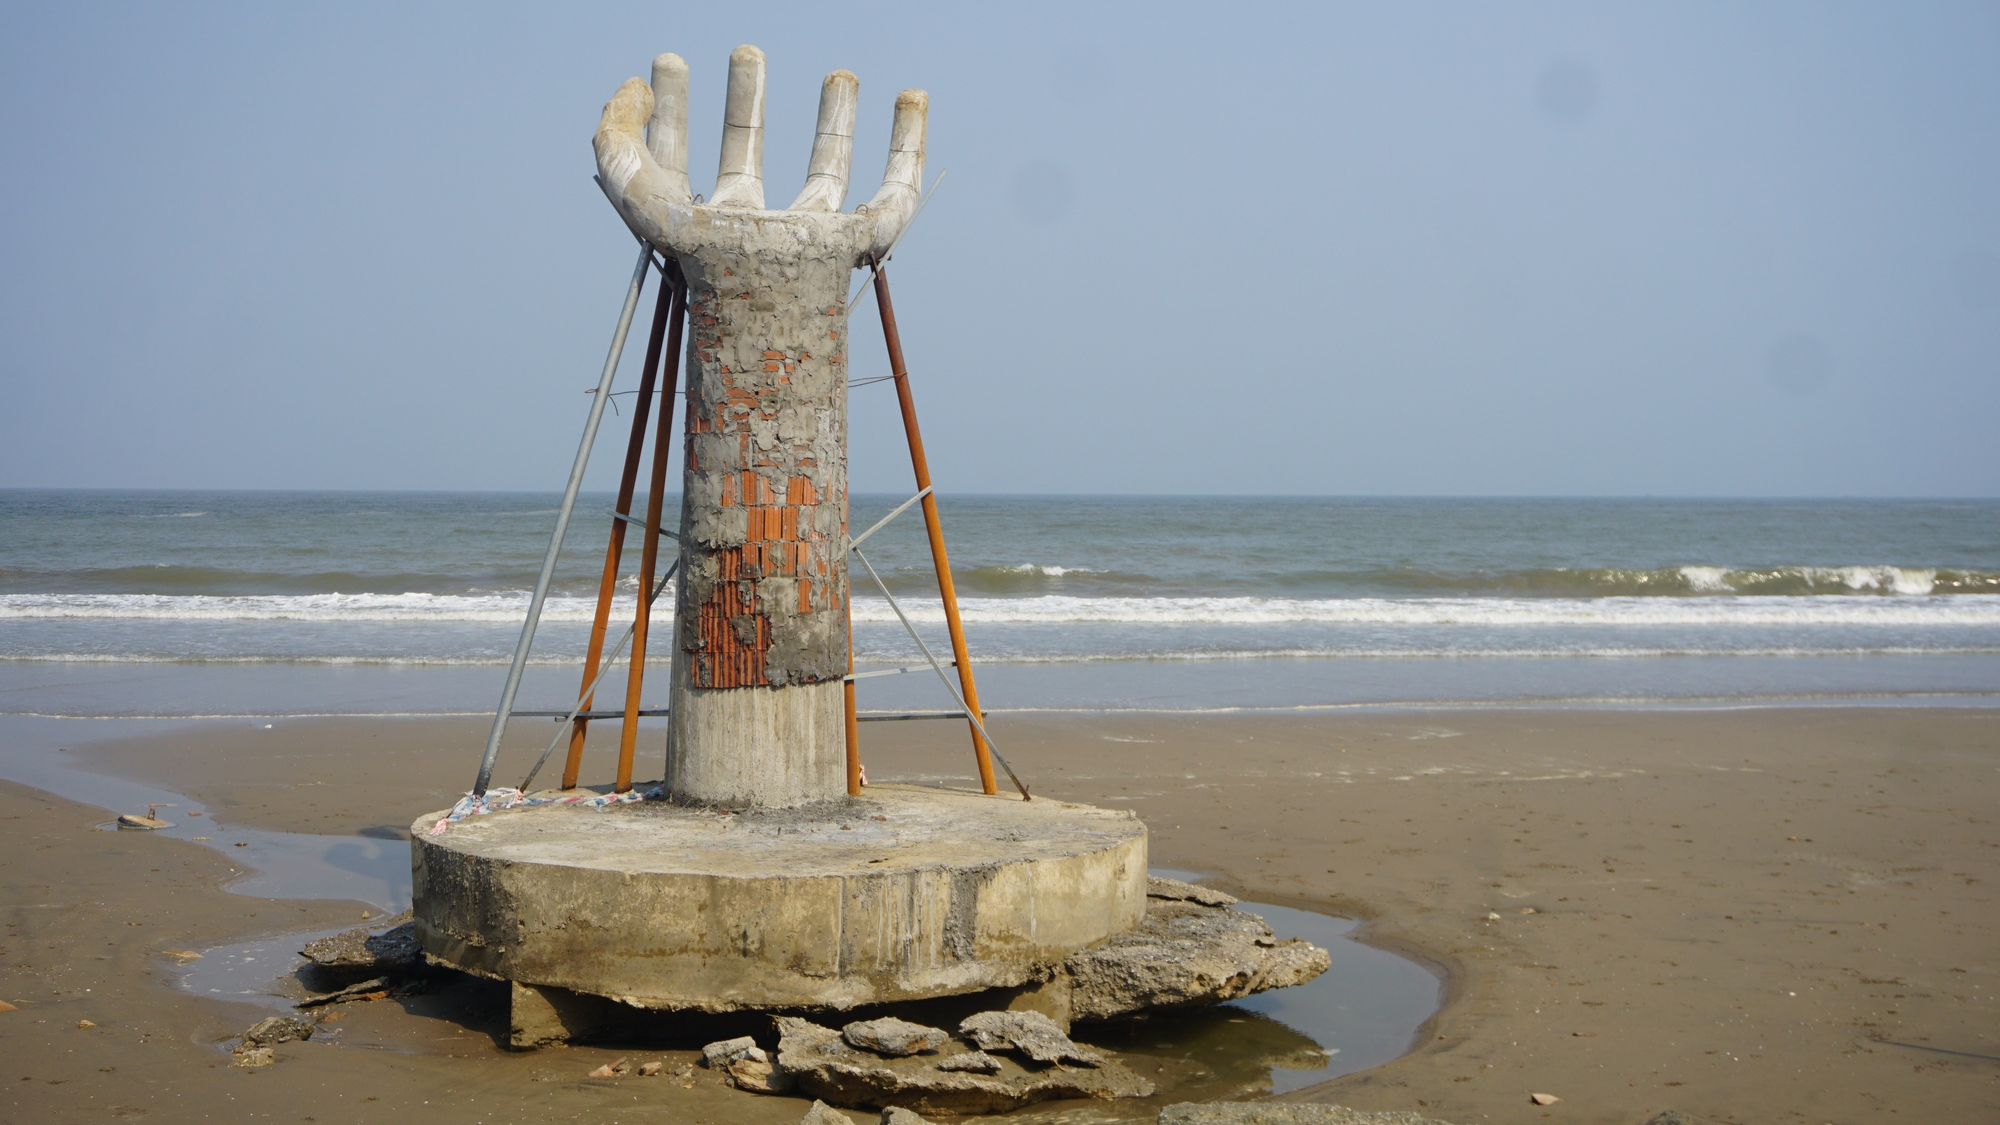 5 'bàn tay' khổng lồ xuất hiện trên bãi biển Hải Tiến - Ảnh 2.